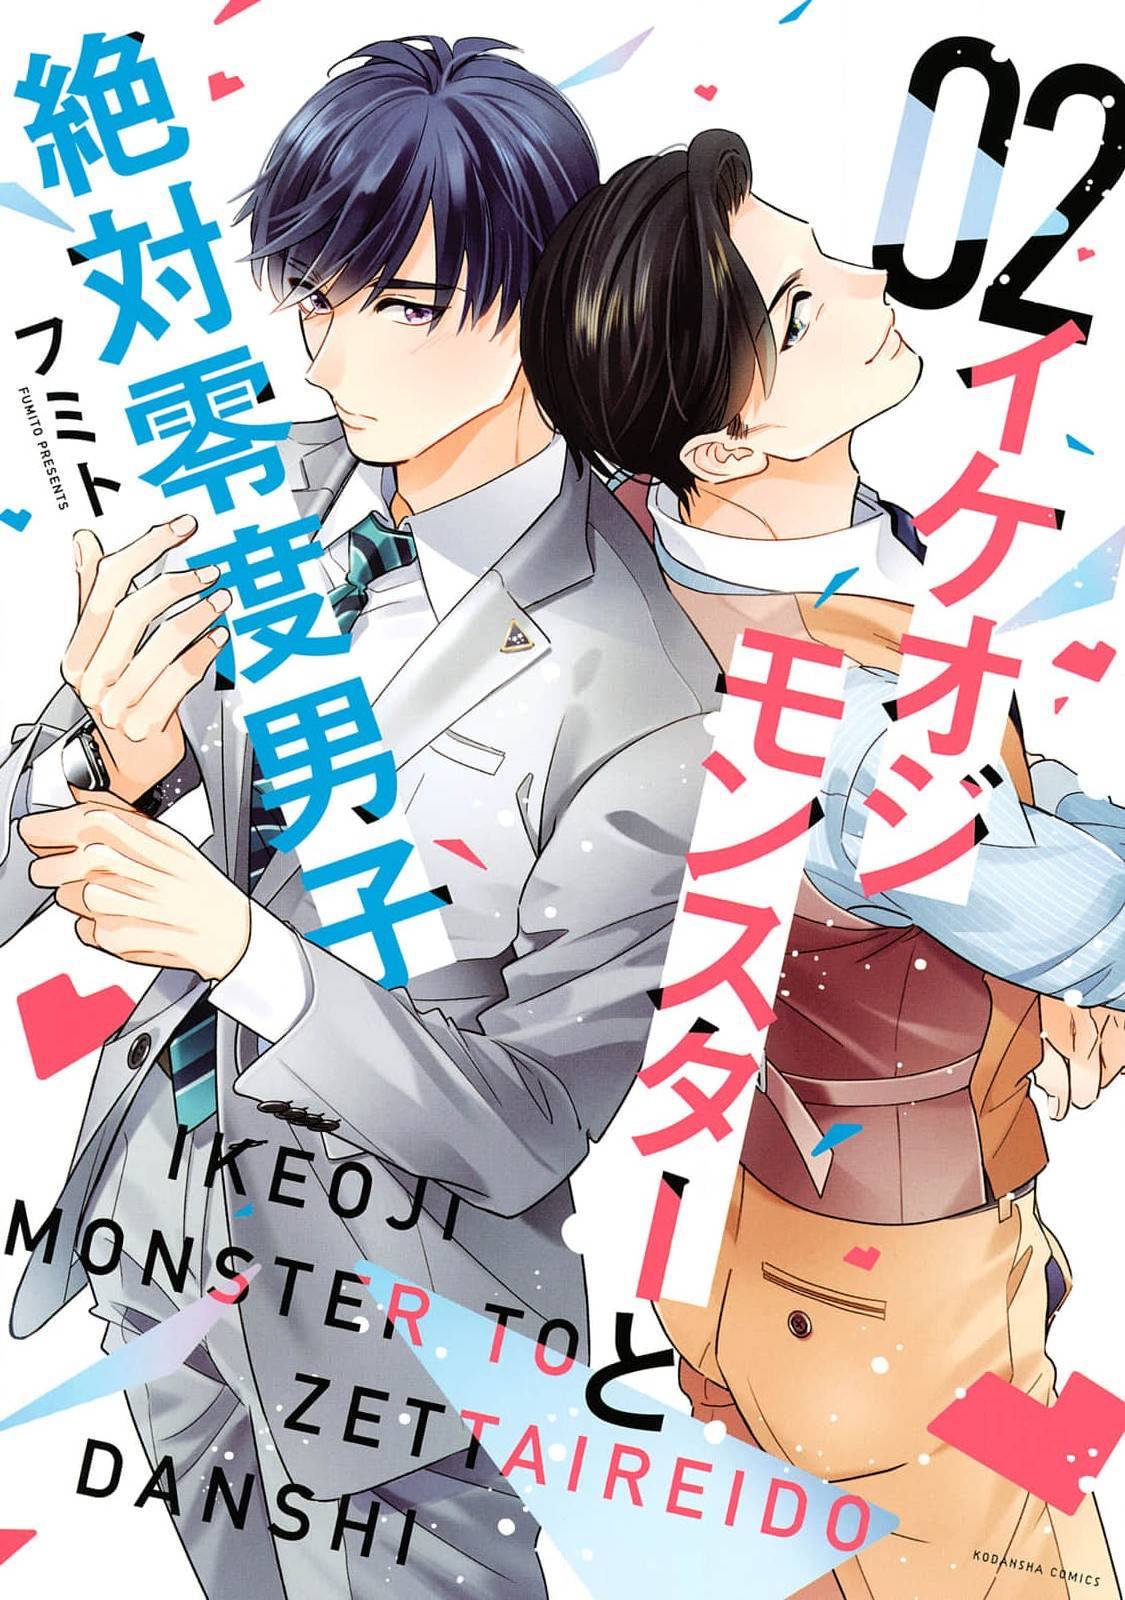 Ikeoji Monster to Zettai Reido Danshi - chapter 5 - #1